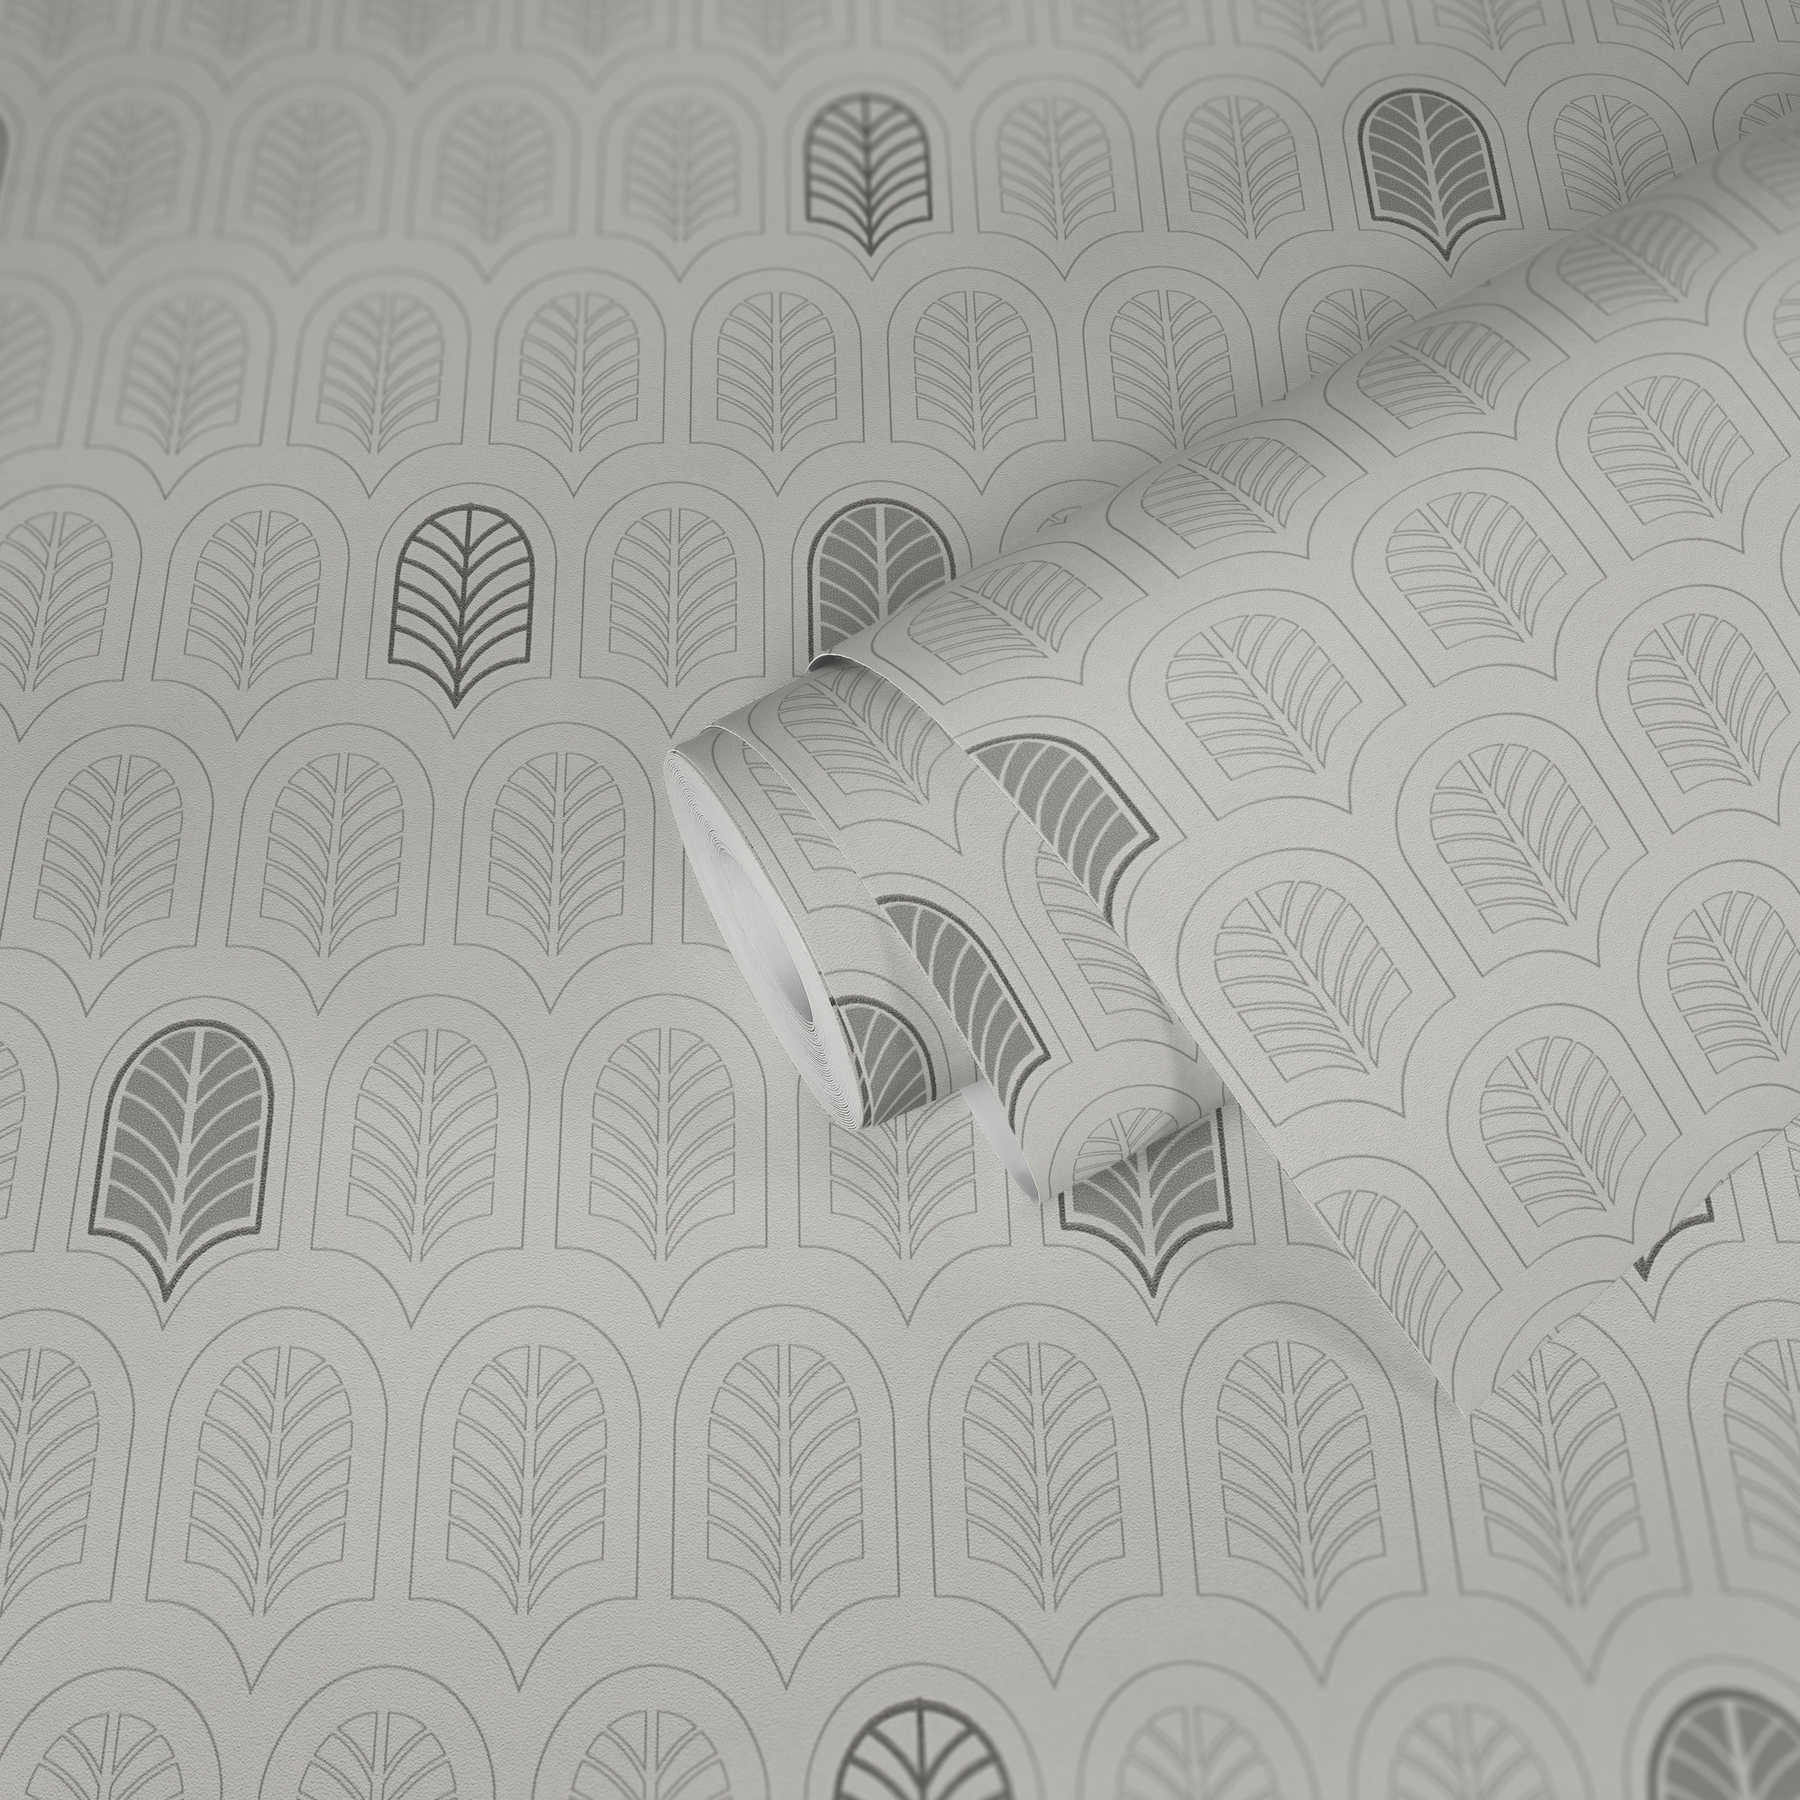             Papier peint rétro style Art déco, mat & effet pailleté - blanc, gris, anthracite
        